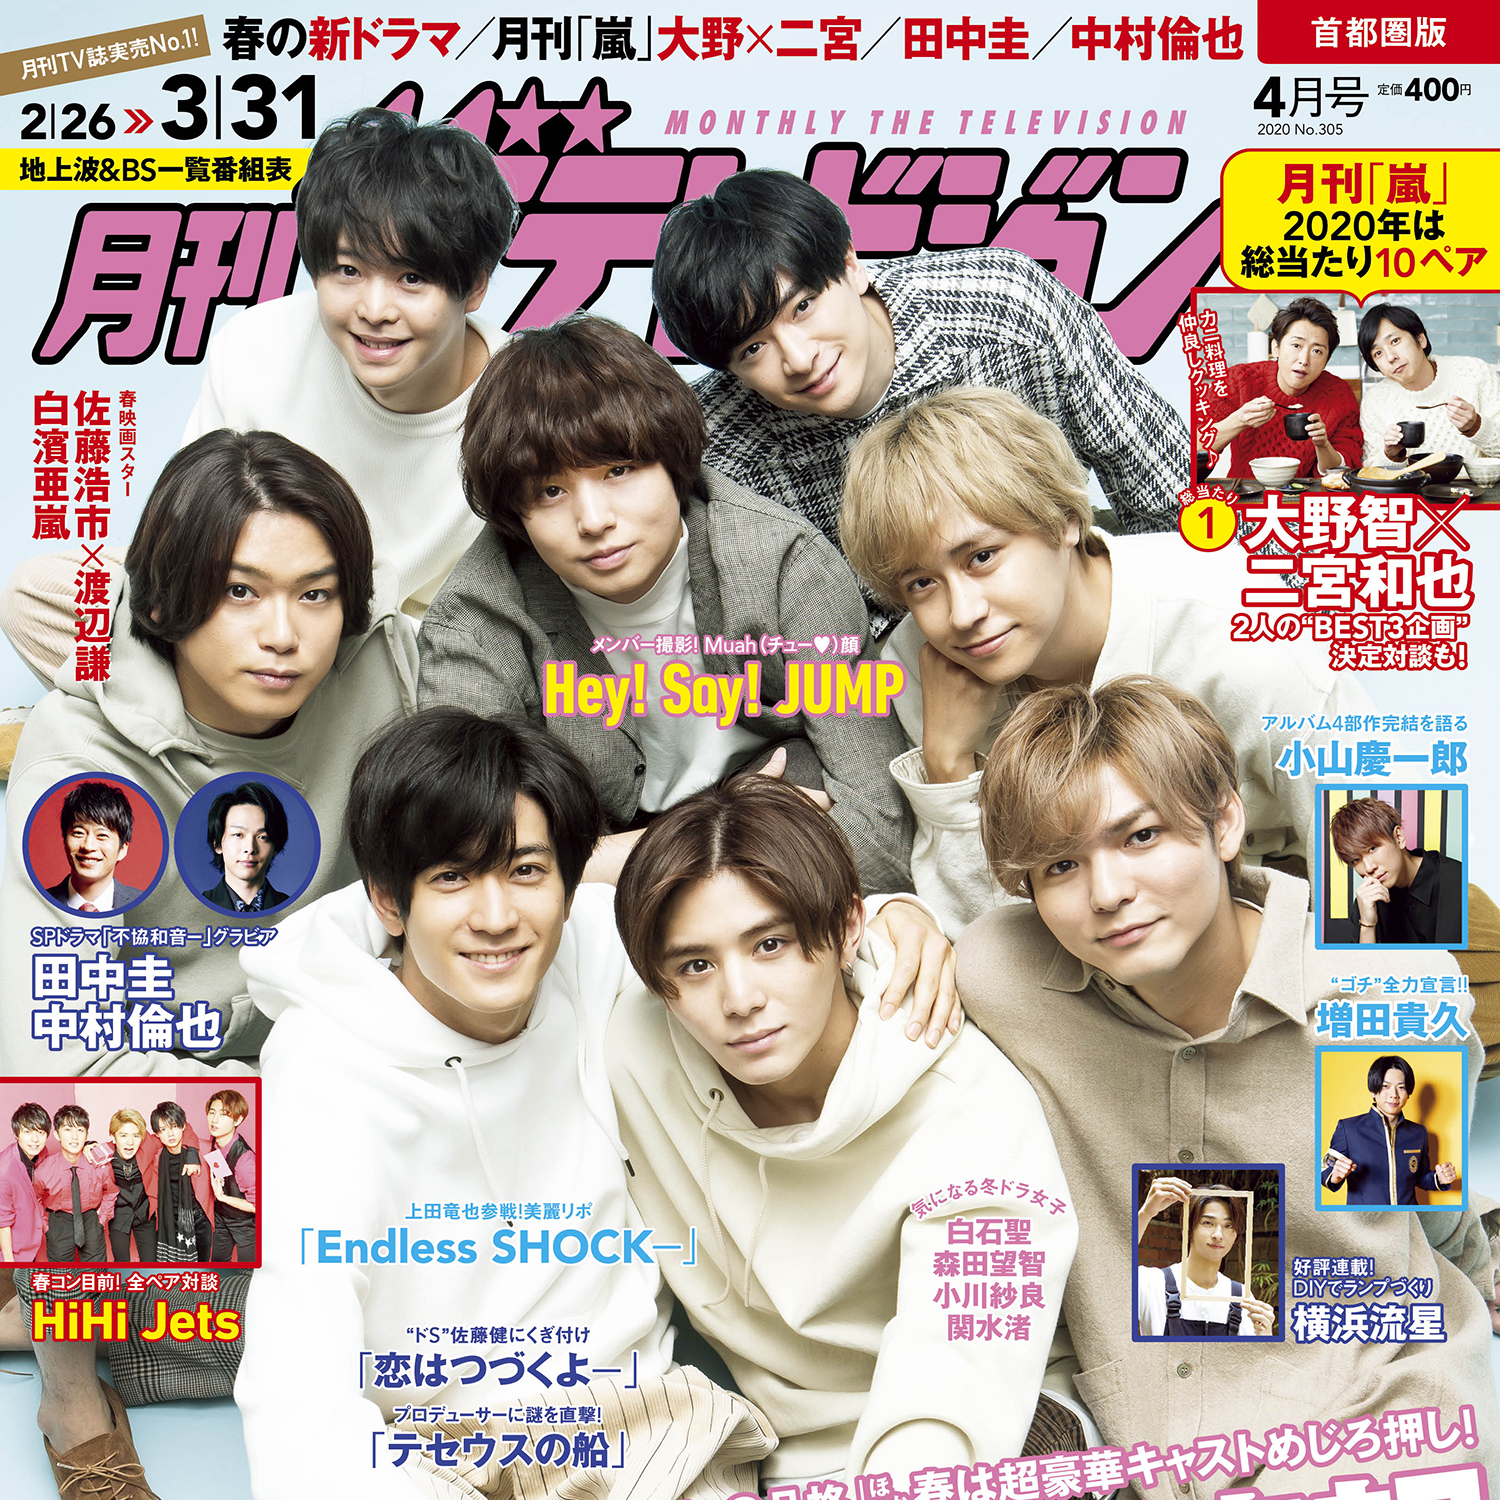 月刊ザテレビジョン 4月号はhey Say Jumpが表紙 誌面ではキス顔披露も Emo Miu エモミュー